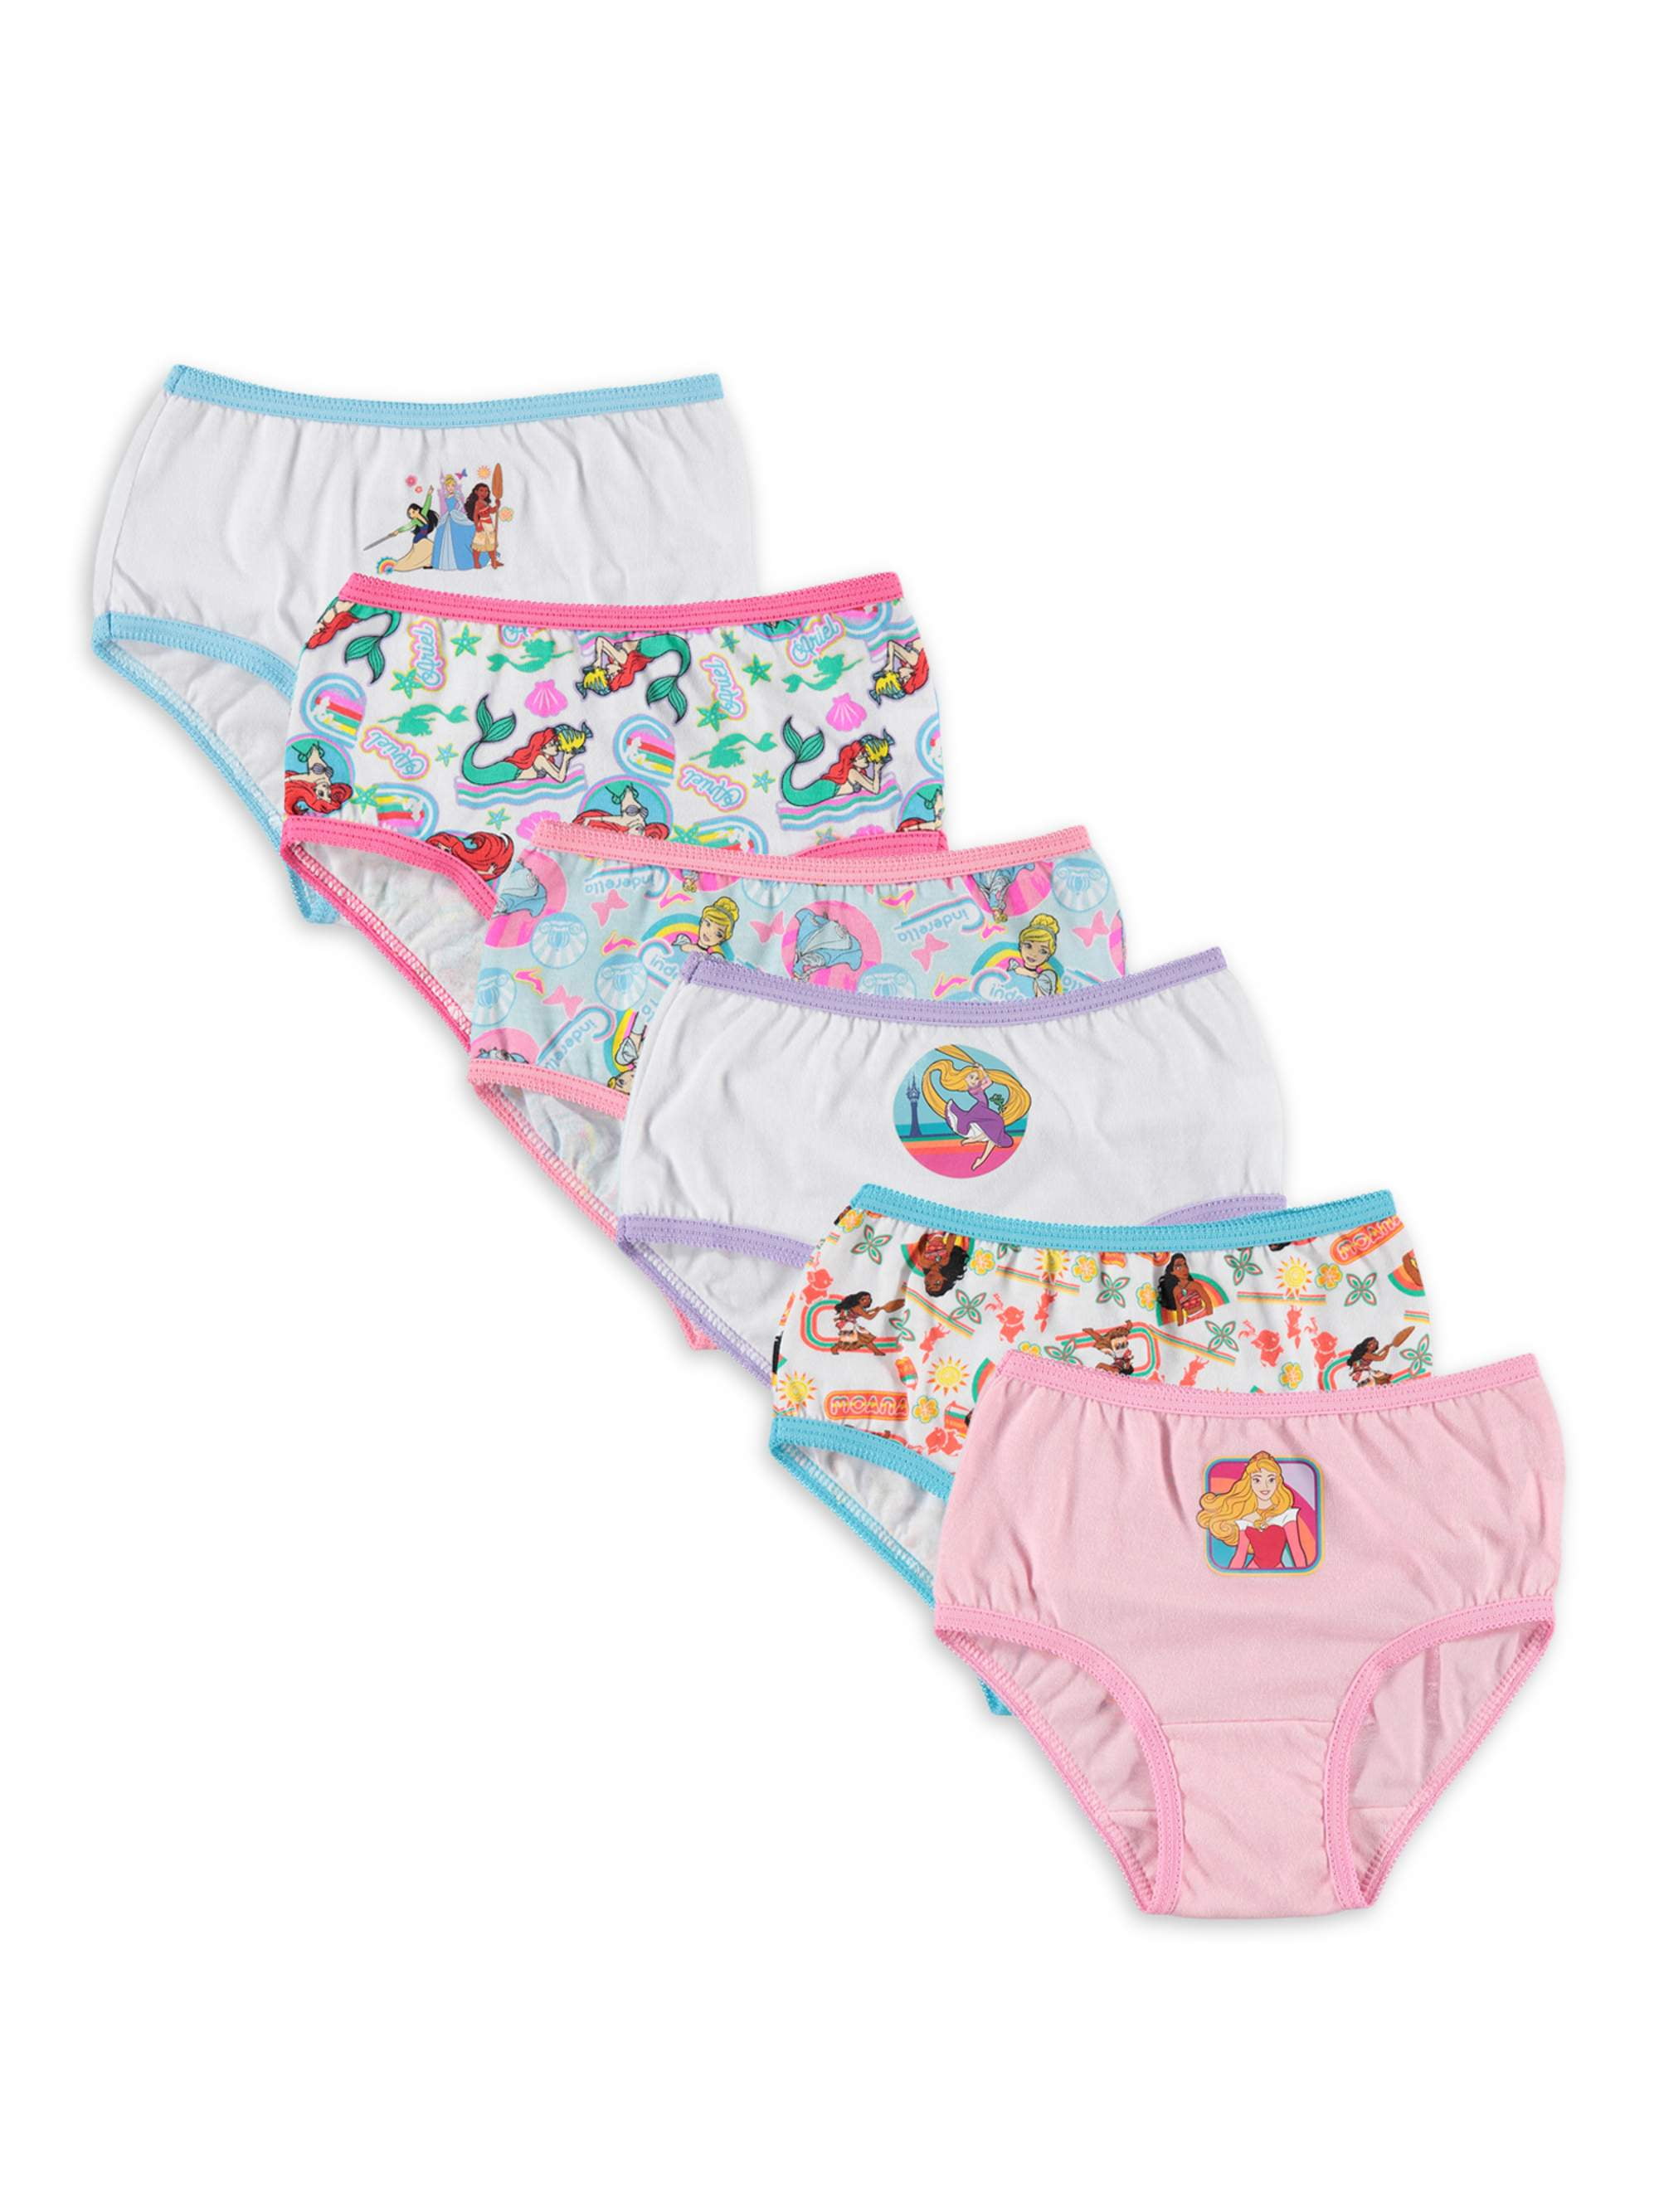 Disney Princess Toddler Girls' Panties, 6 Pack Sizes 2T-4T